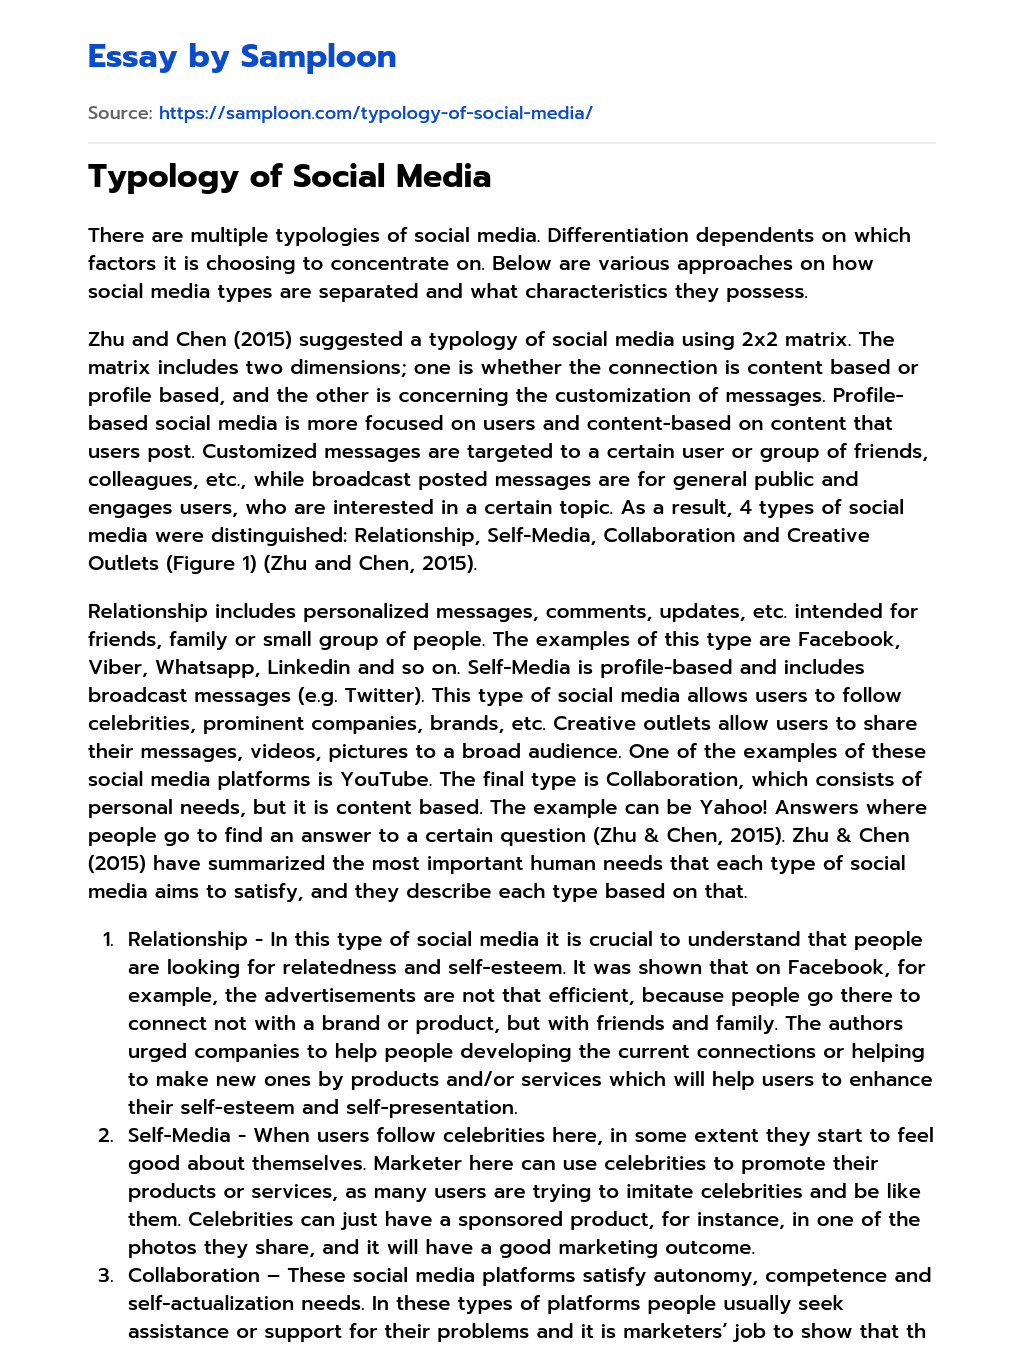 Typology of Social Media essay